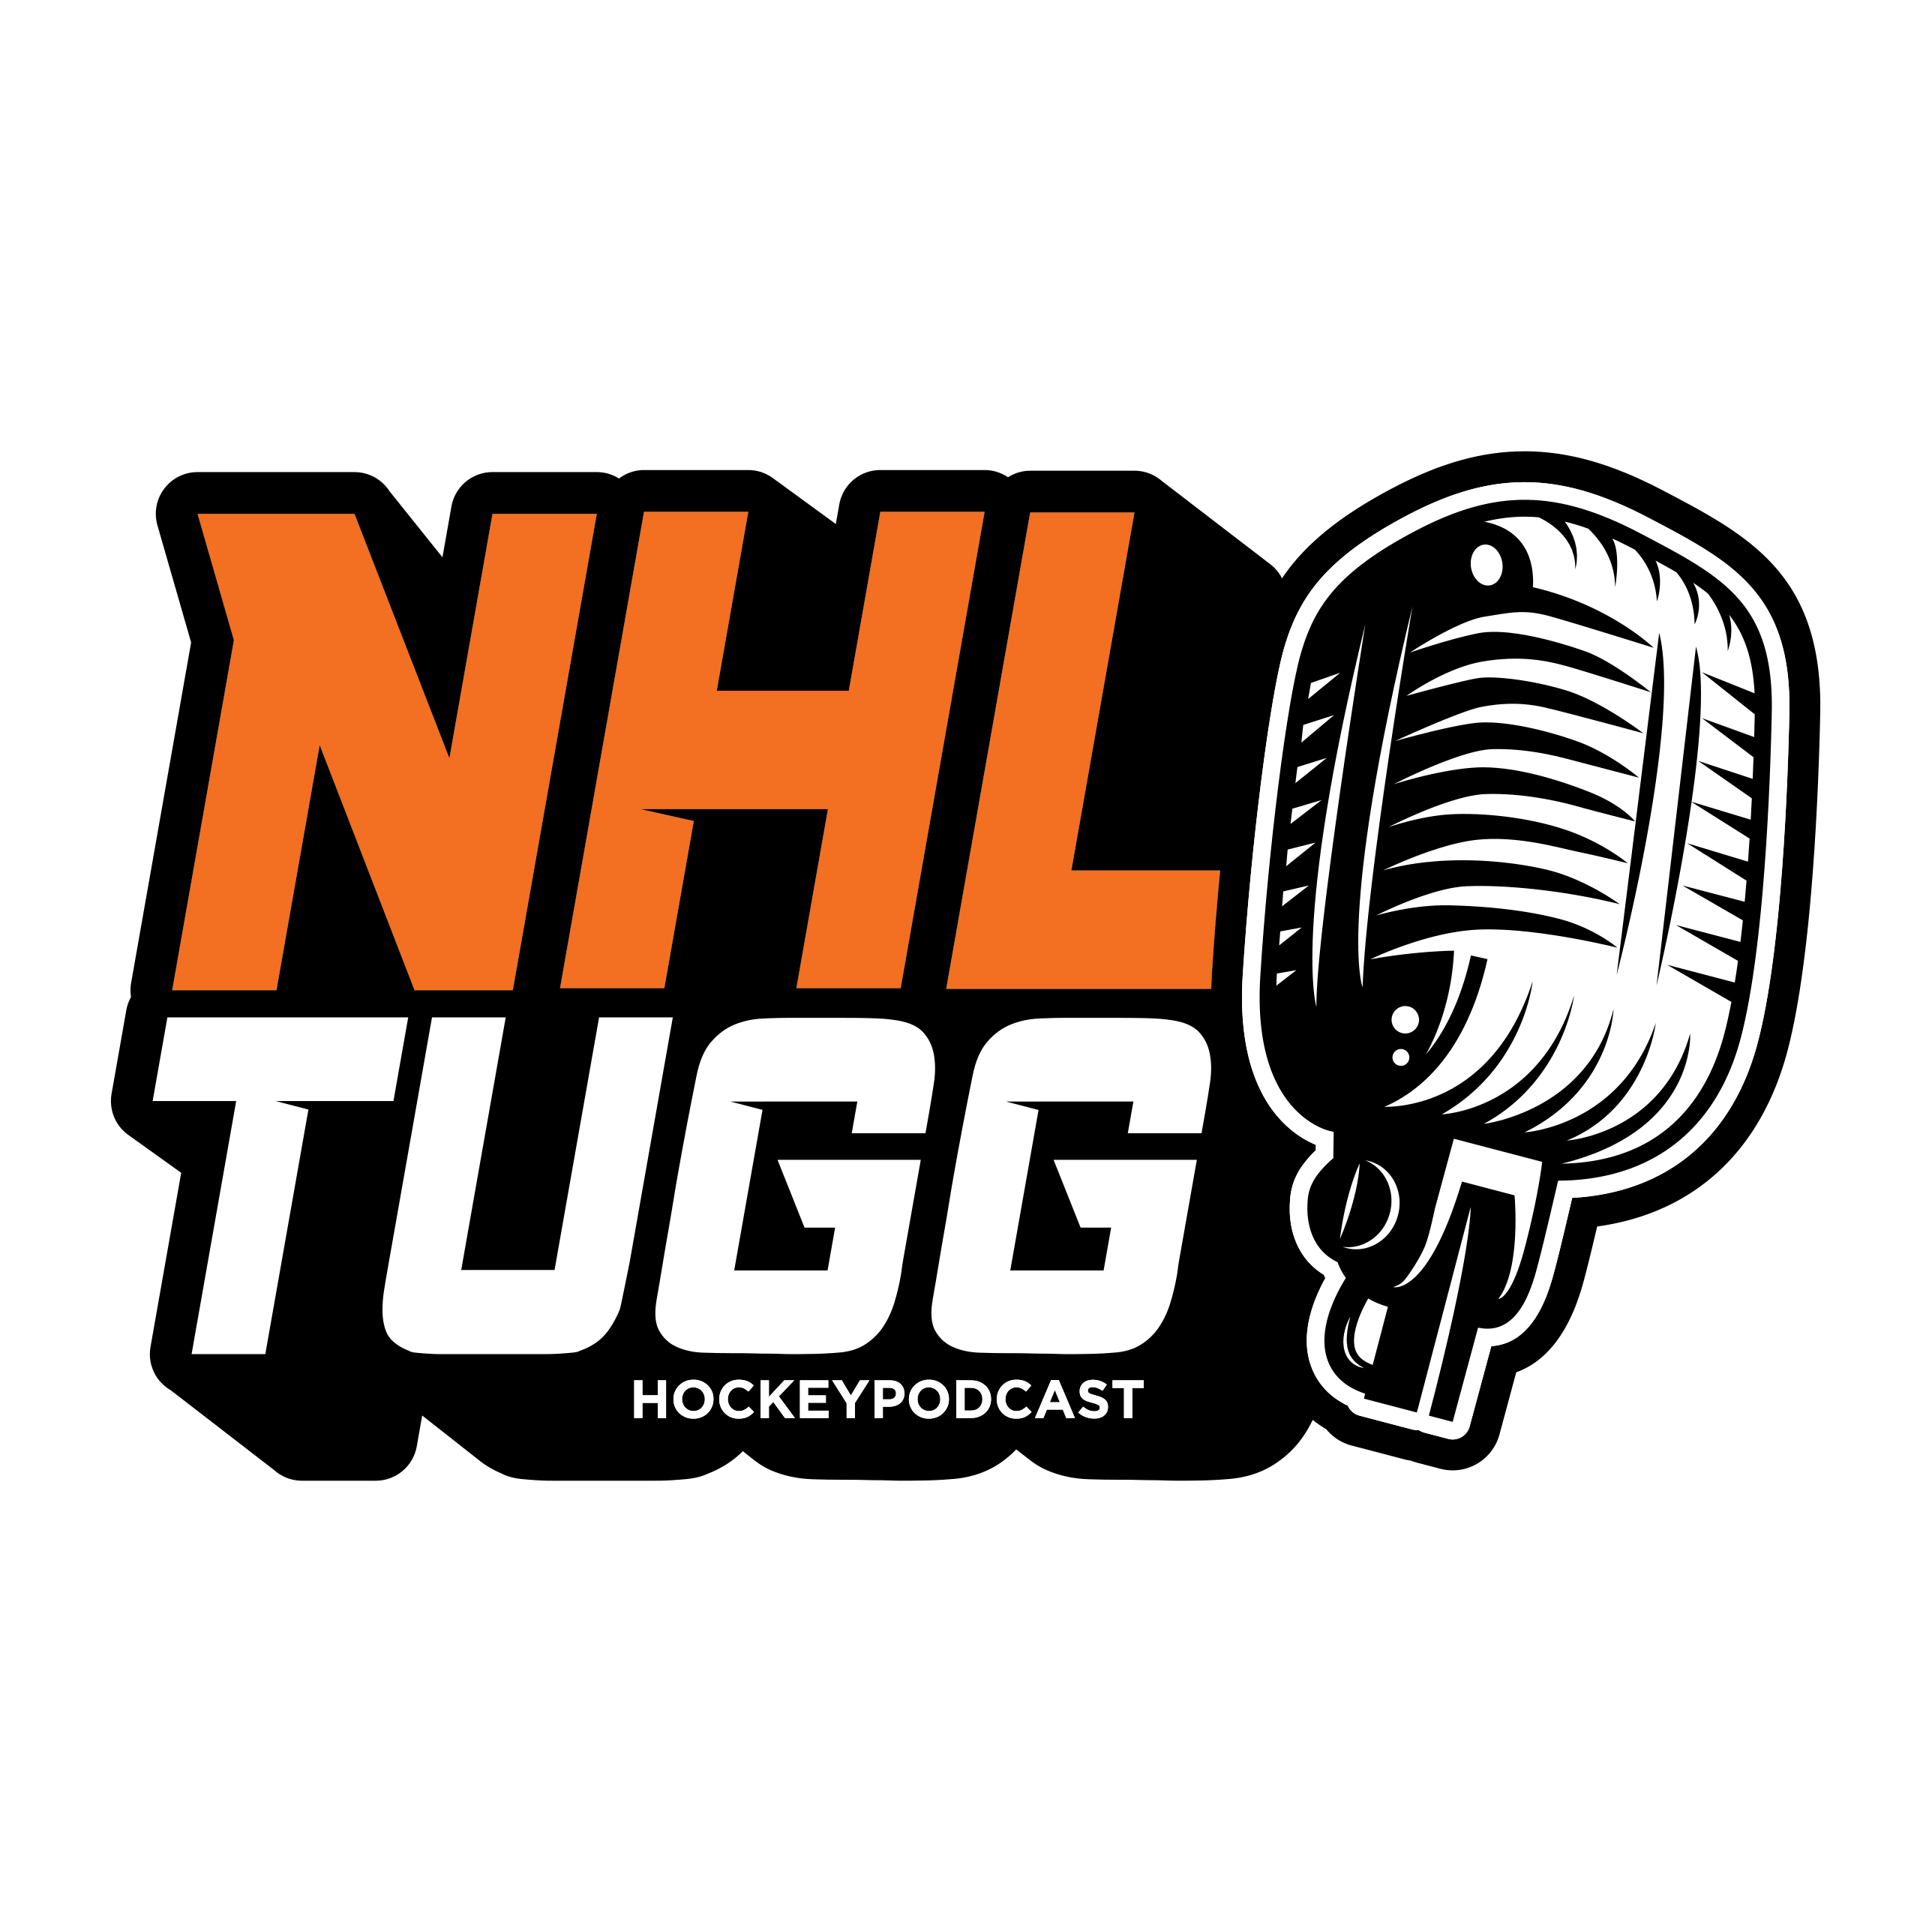 NHL-Tugg avsnitt 98 ”Han ser ut som en Norris-kandidat”